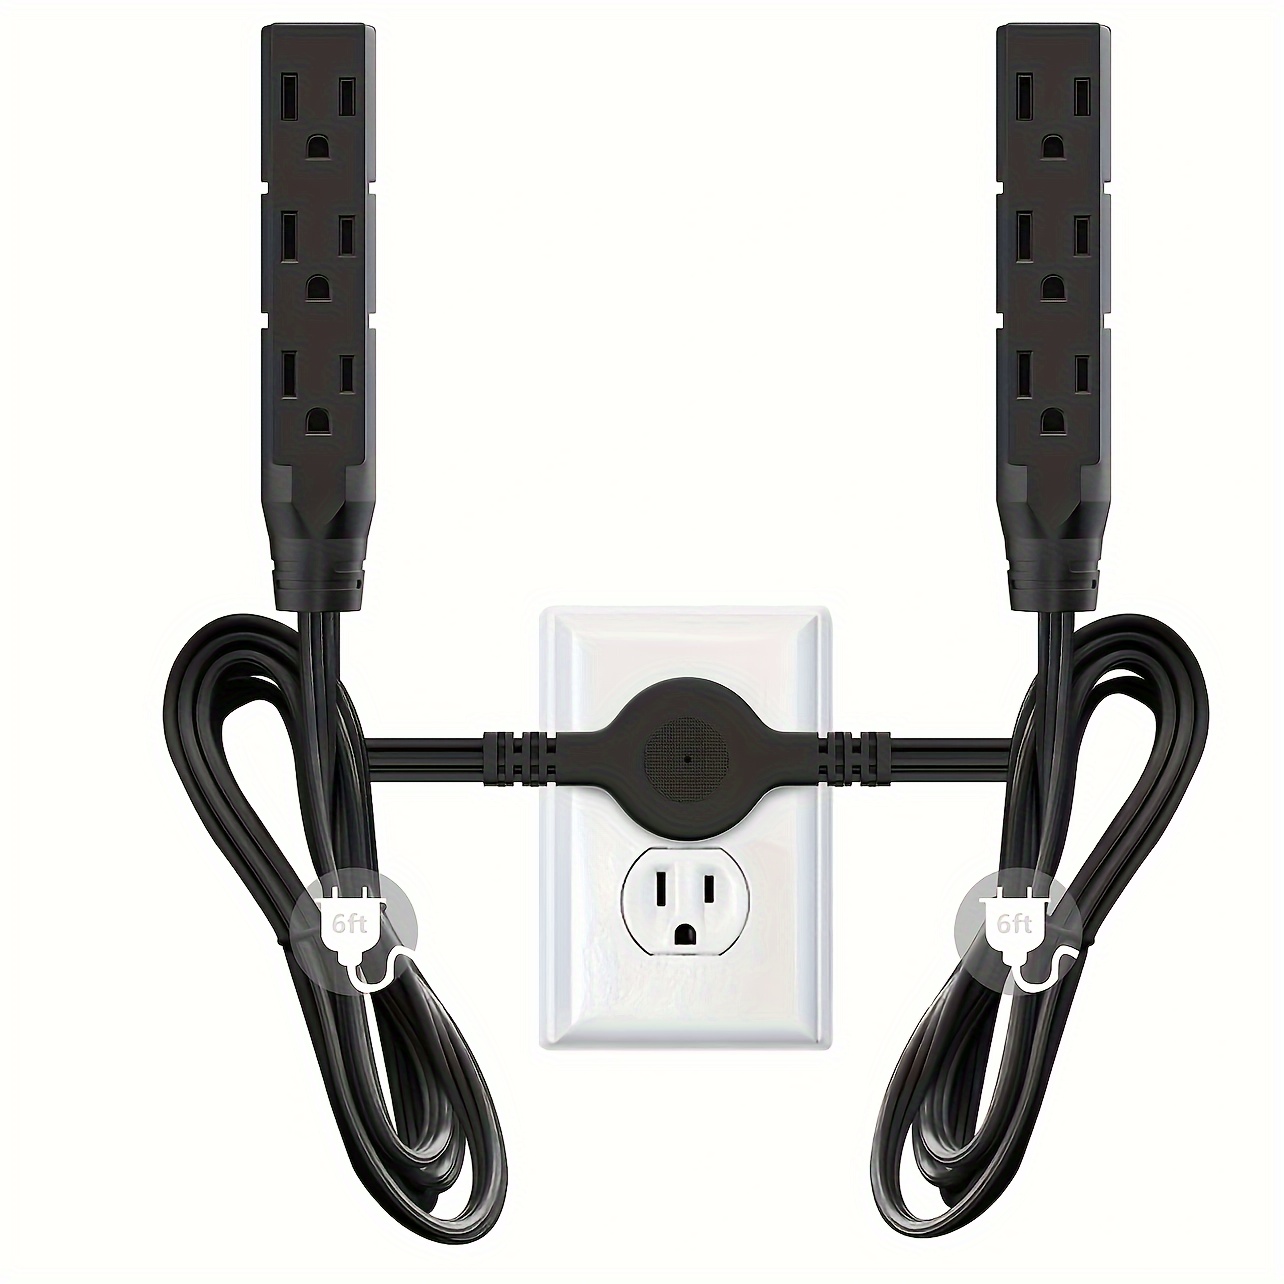 Regleta protectora de sobretensiones – Cable de extensión de enchufe plano  de 6 pies con 8 tomas amplias y 4 puertos USB (1 USB C), extensor de salida